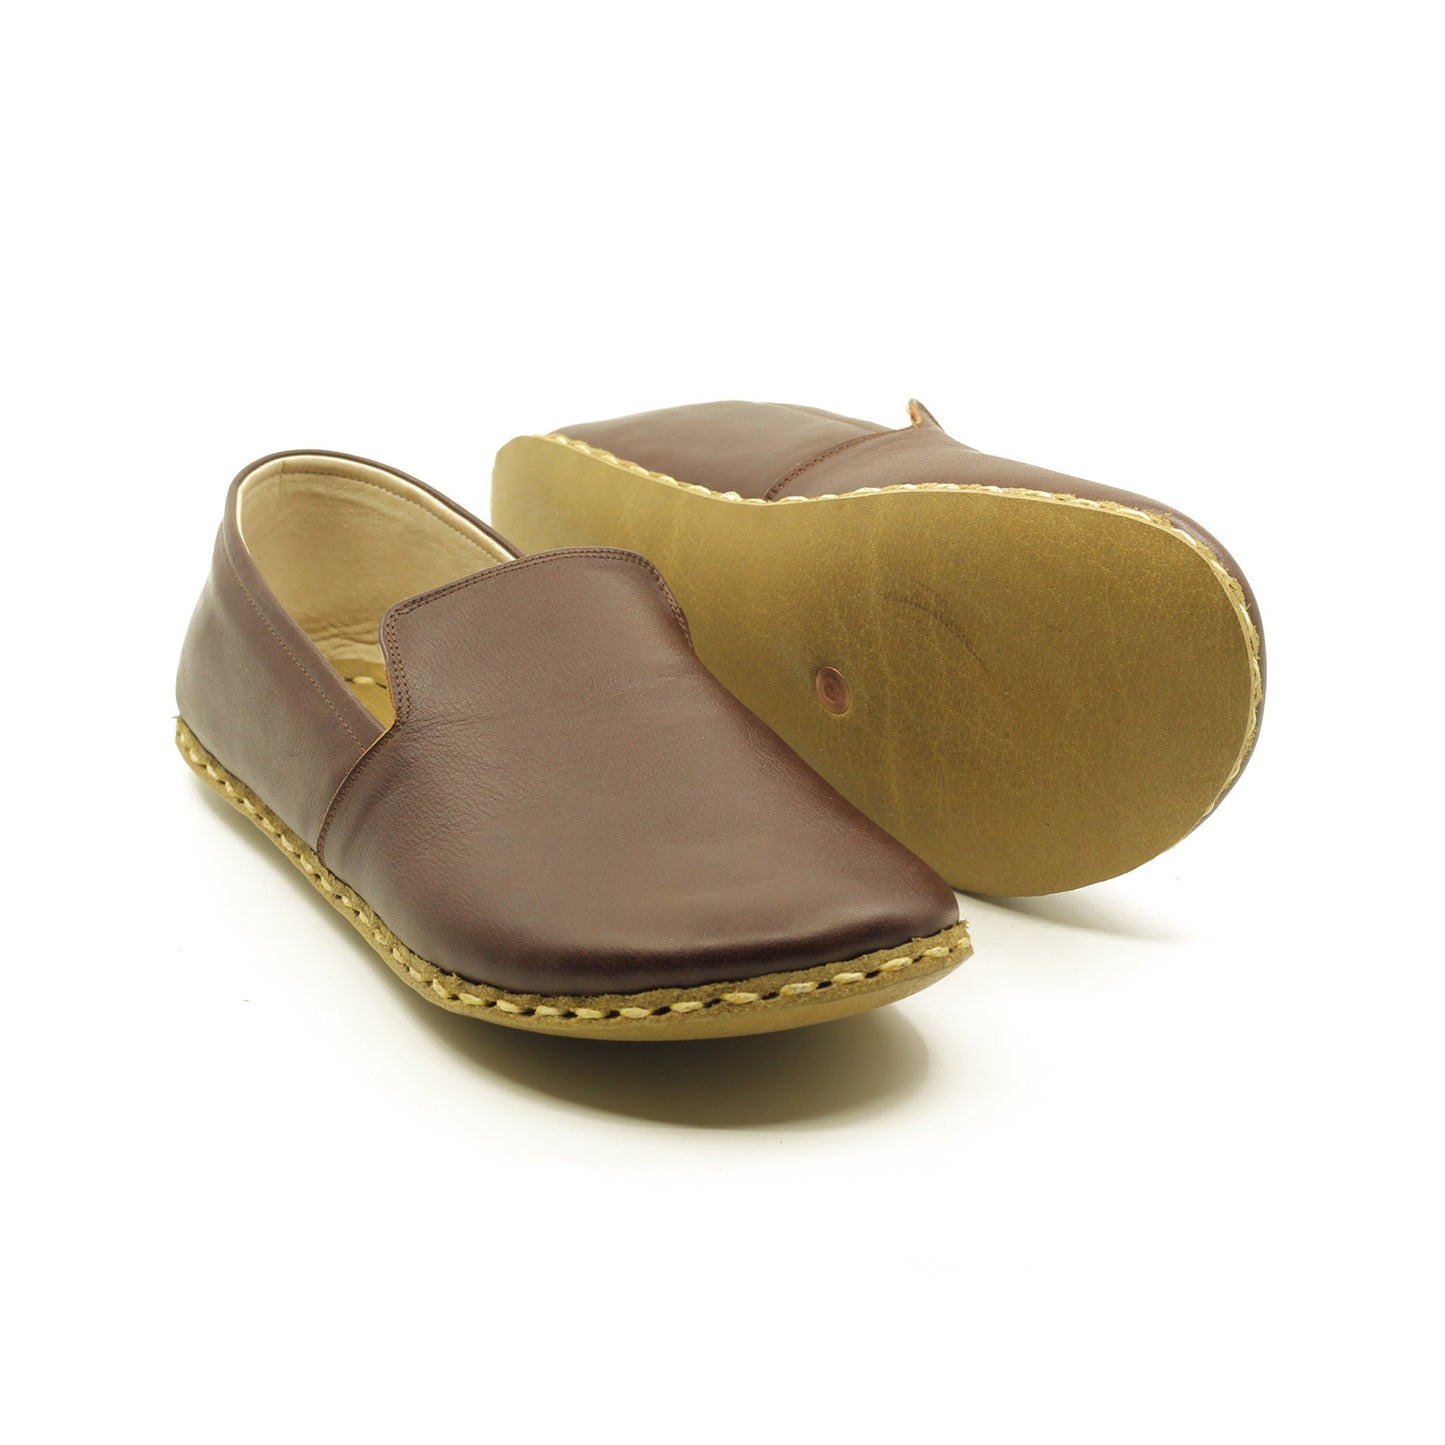 Men's Artisanal Barefoot Leather Shoes - Nefes Craftsmanship